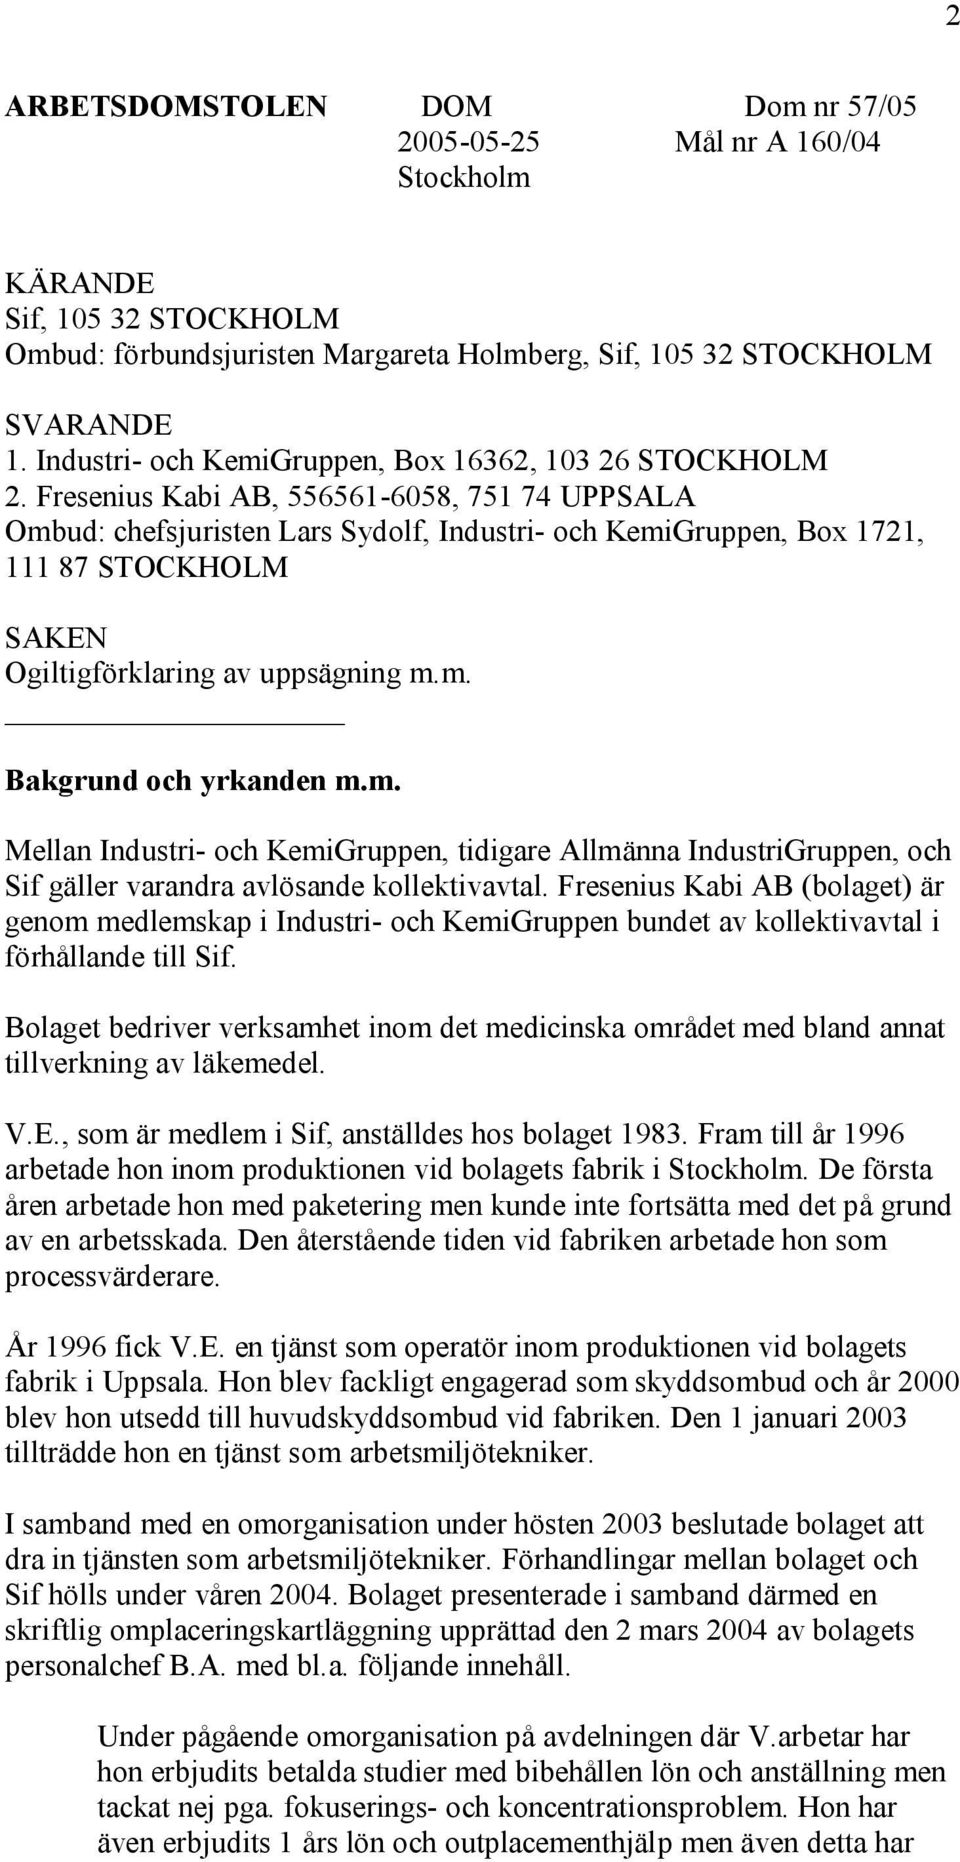 Fresenius Kabi AB, 556561-6058, 751 74 UPPSALA Ombud: chefsjuristen Lars Sydolf, Industri- och KemiGruppen, Box 1721, 111 87 STOCKHOLM SAKEN Ogiltigförklaring av uppsägning m.m. Bakgrund och yrkanden m.